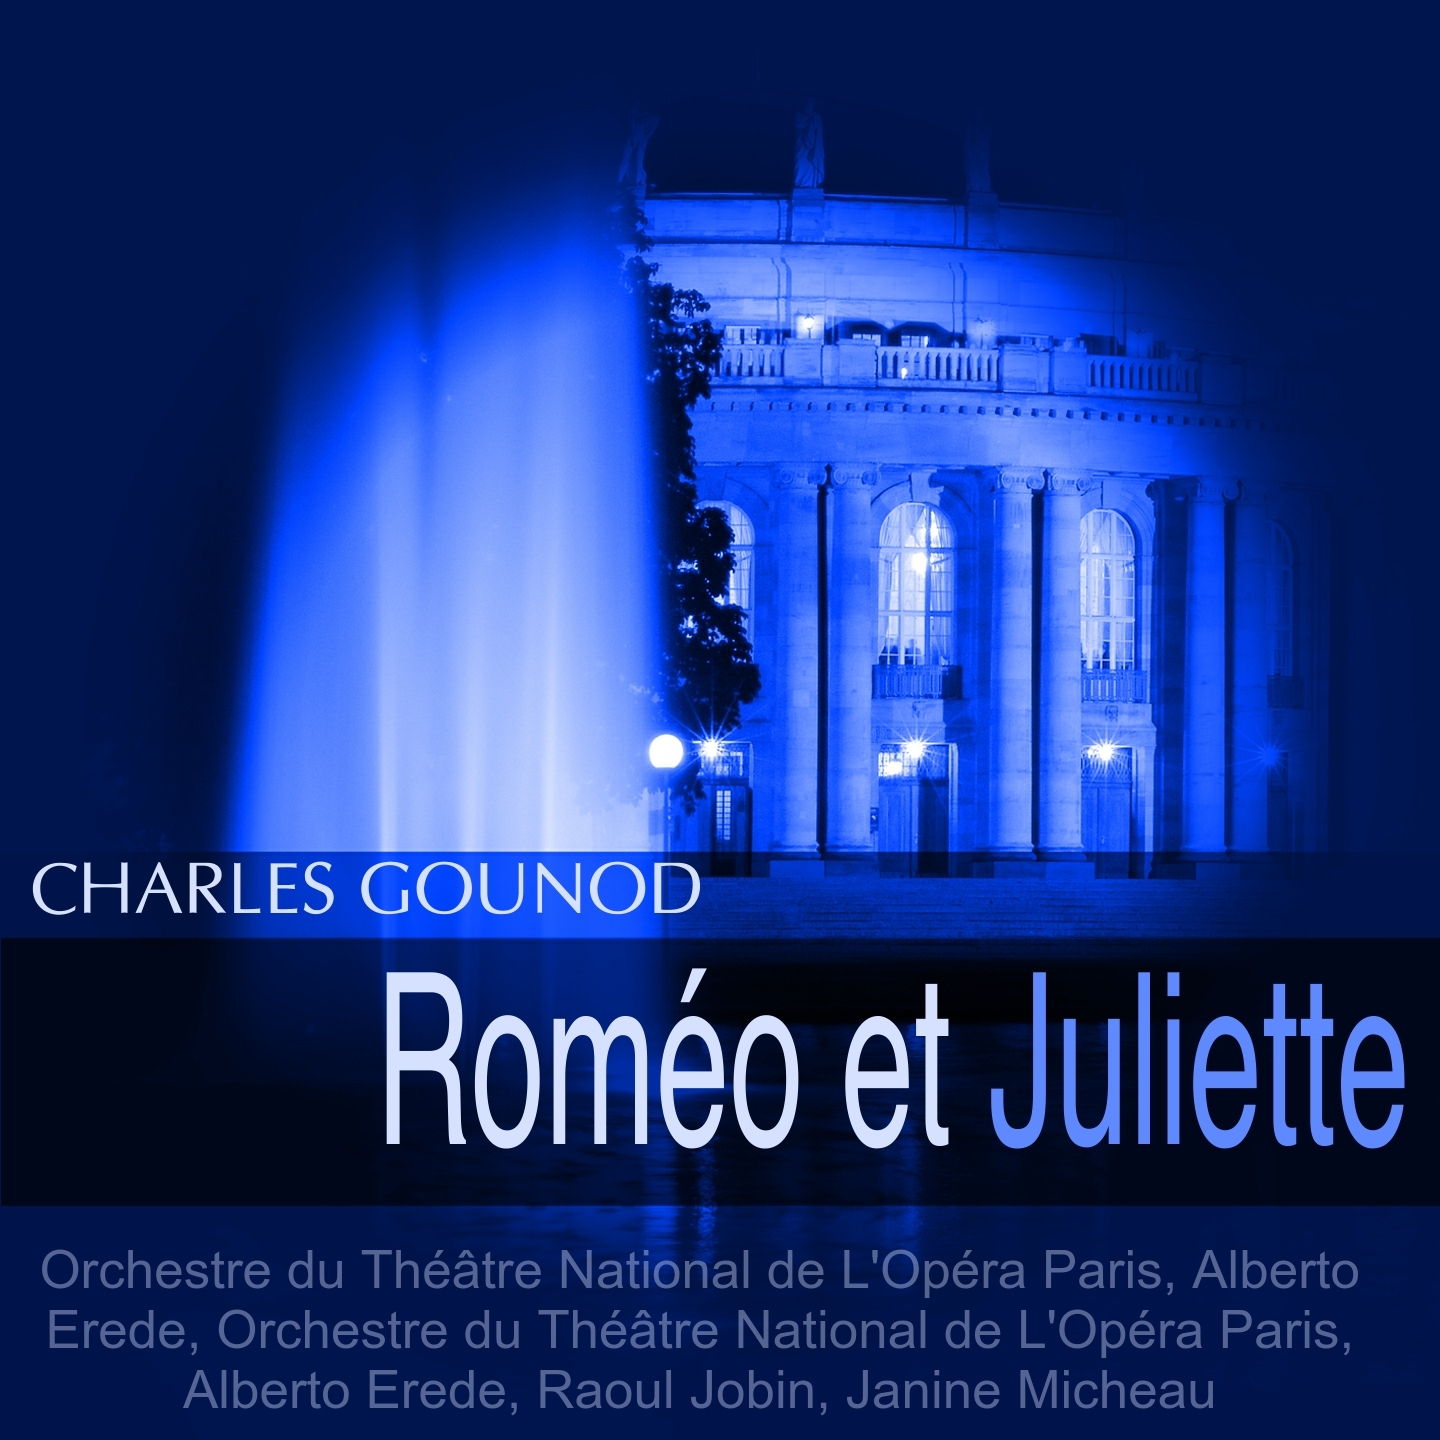 Rome o et Juliette, Act I: " Le nom de cette belle enfant... Ange adorable" Rome o